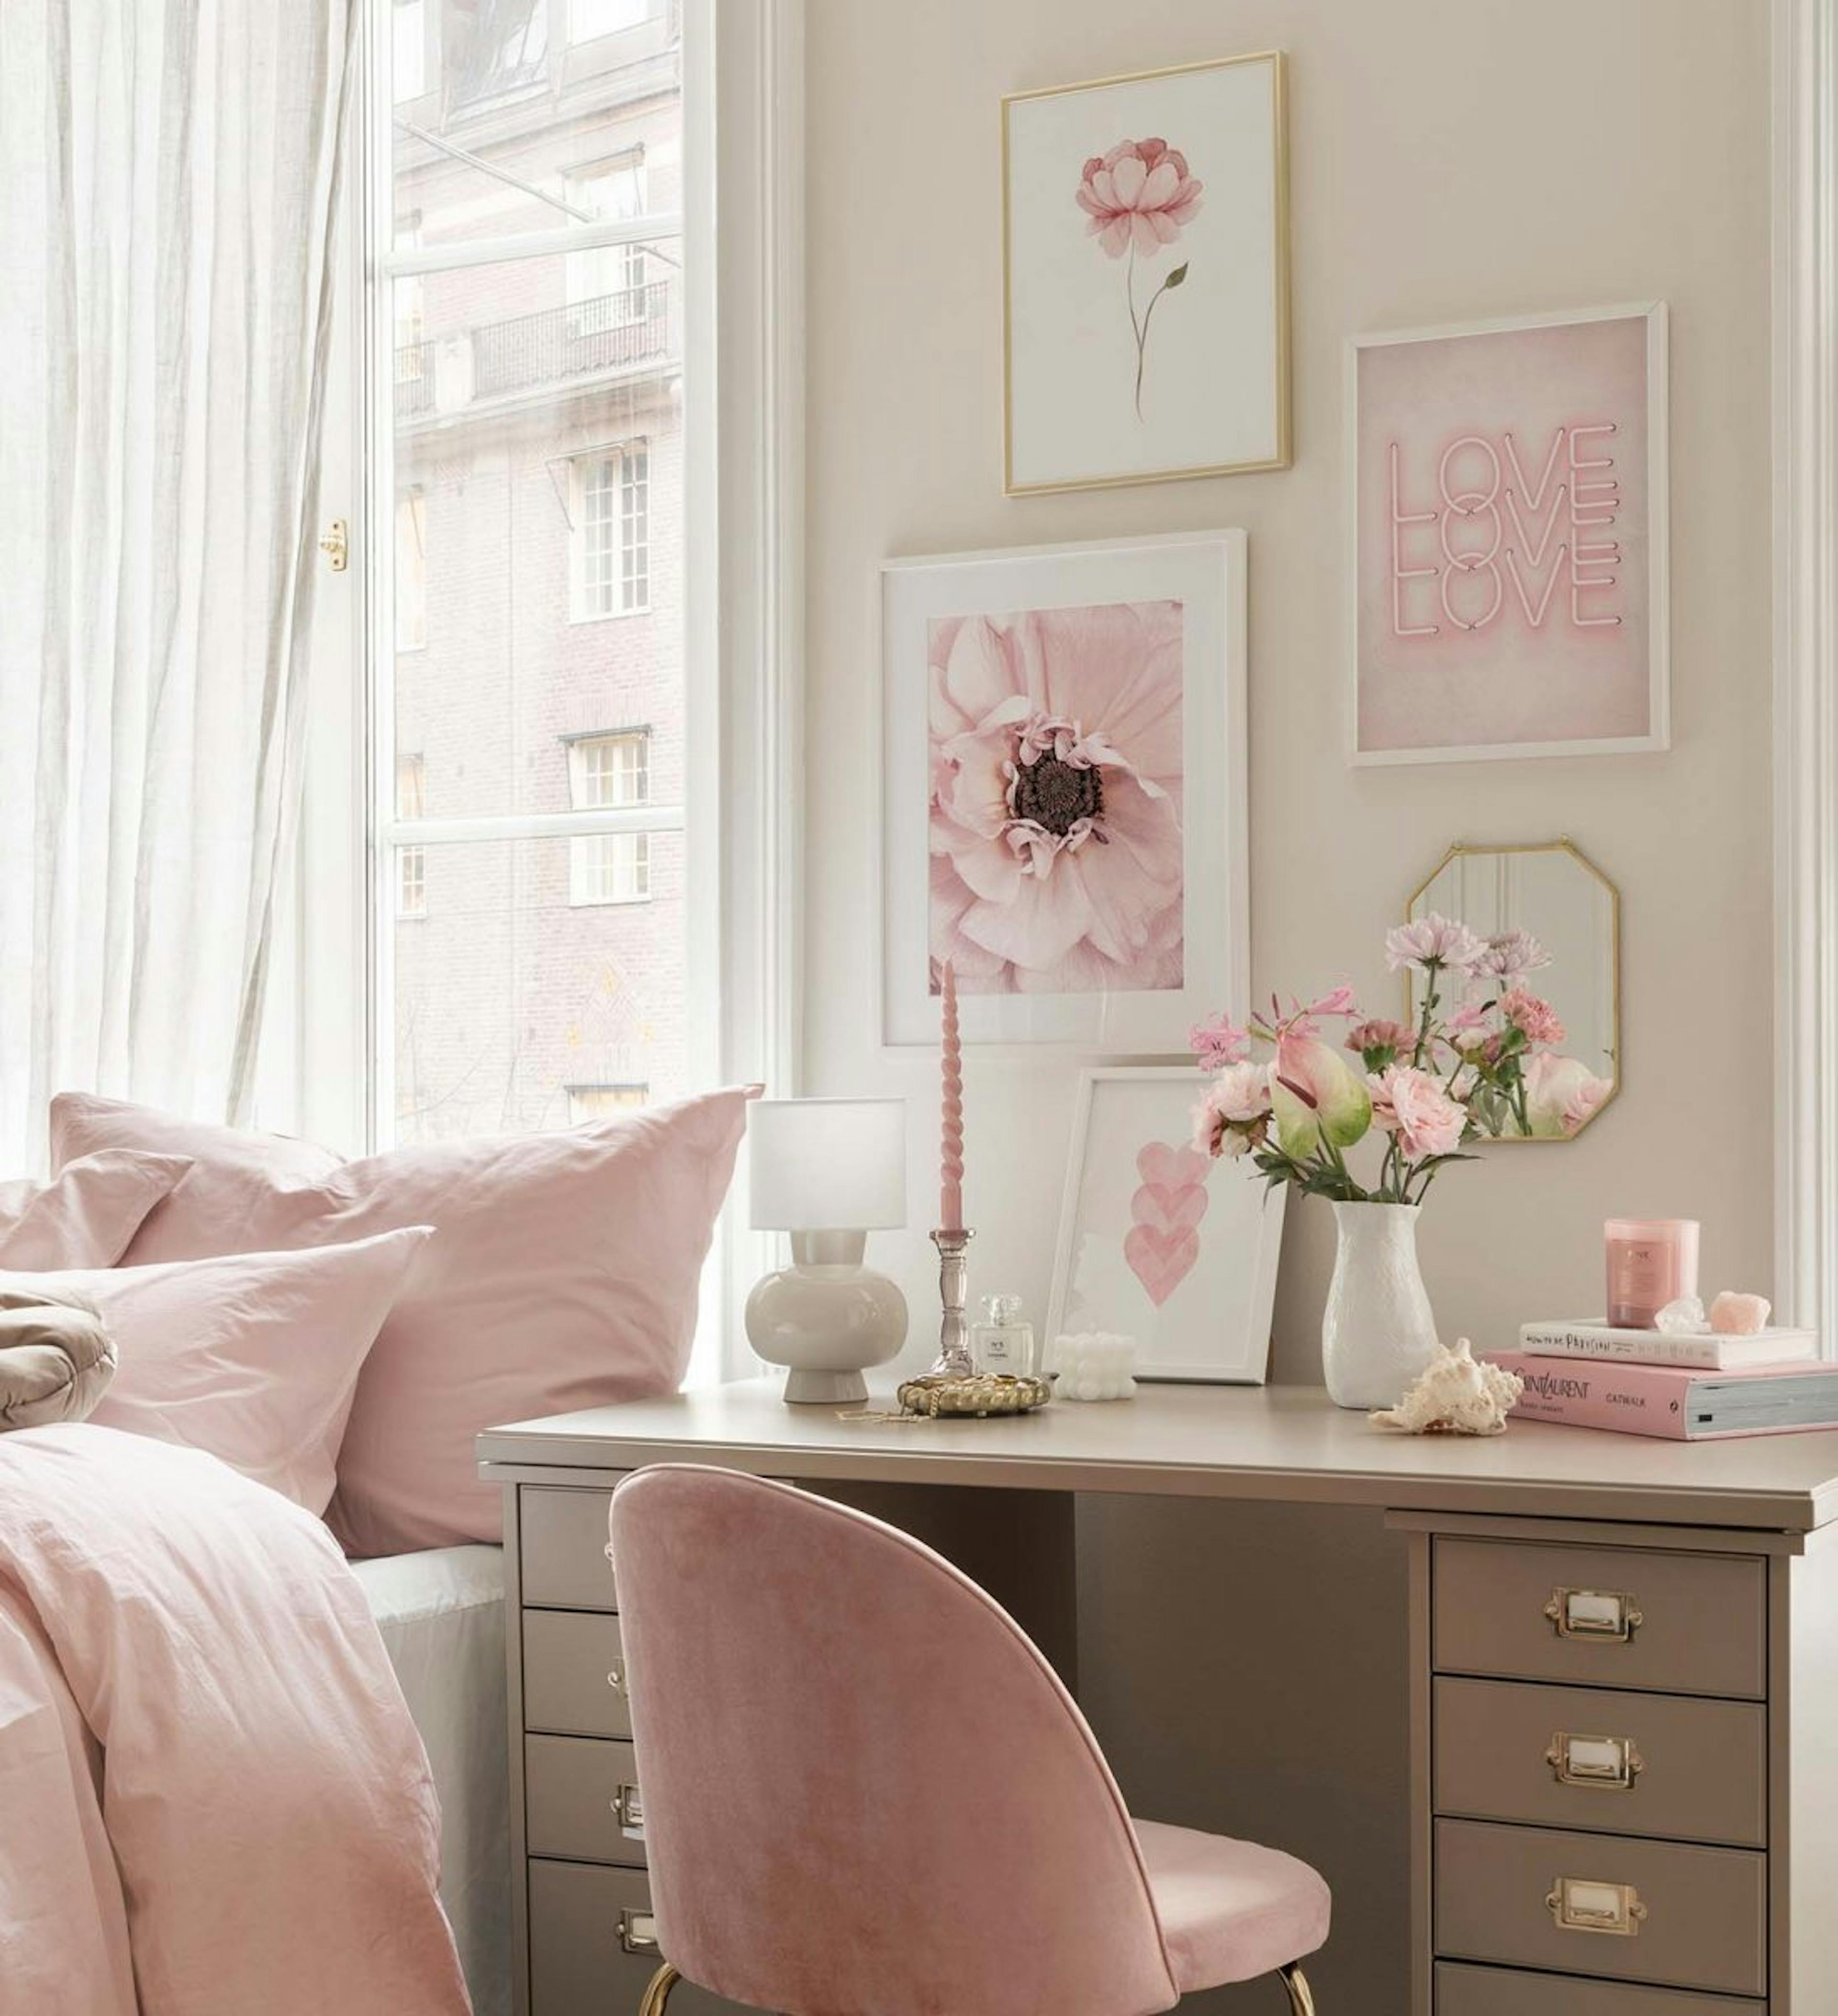 Tipare și ilustrații de artă roz pentru biroul de acasă